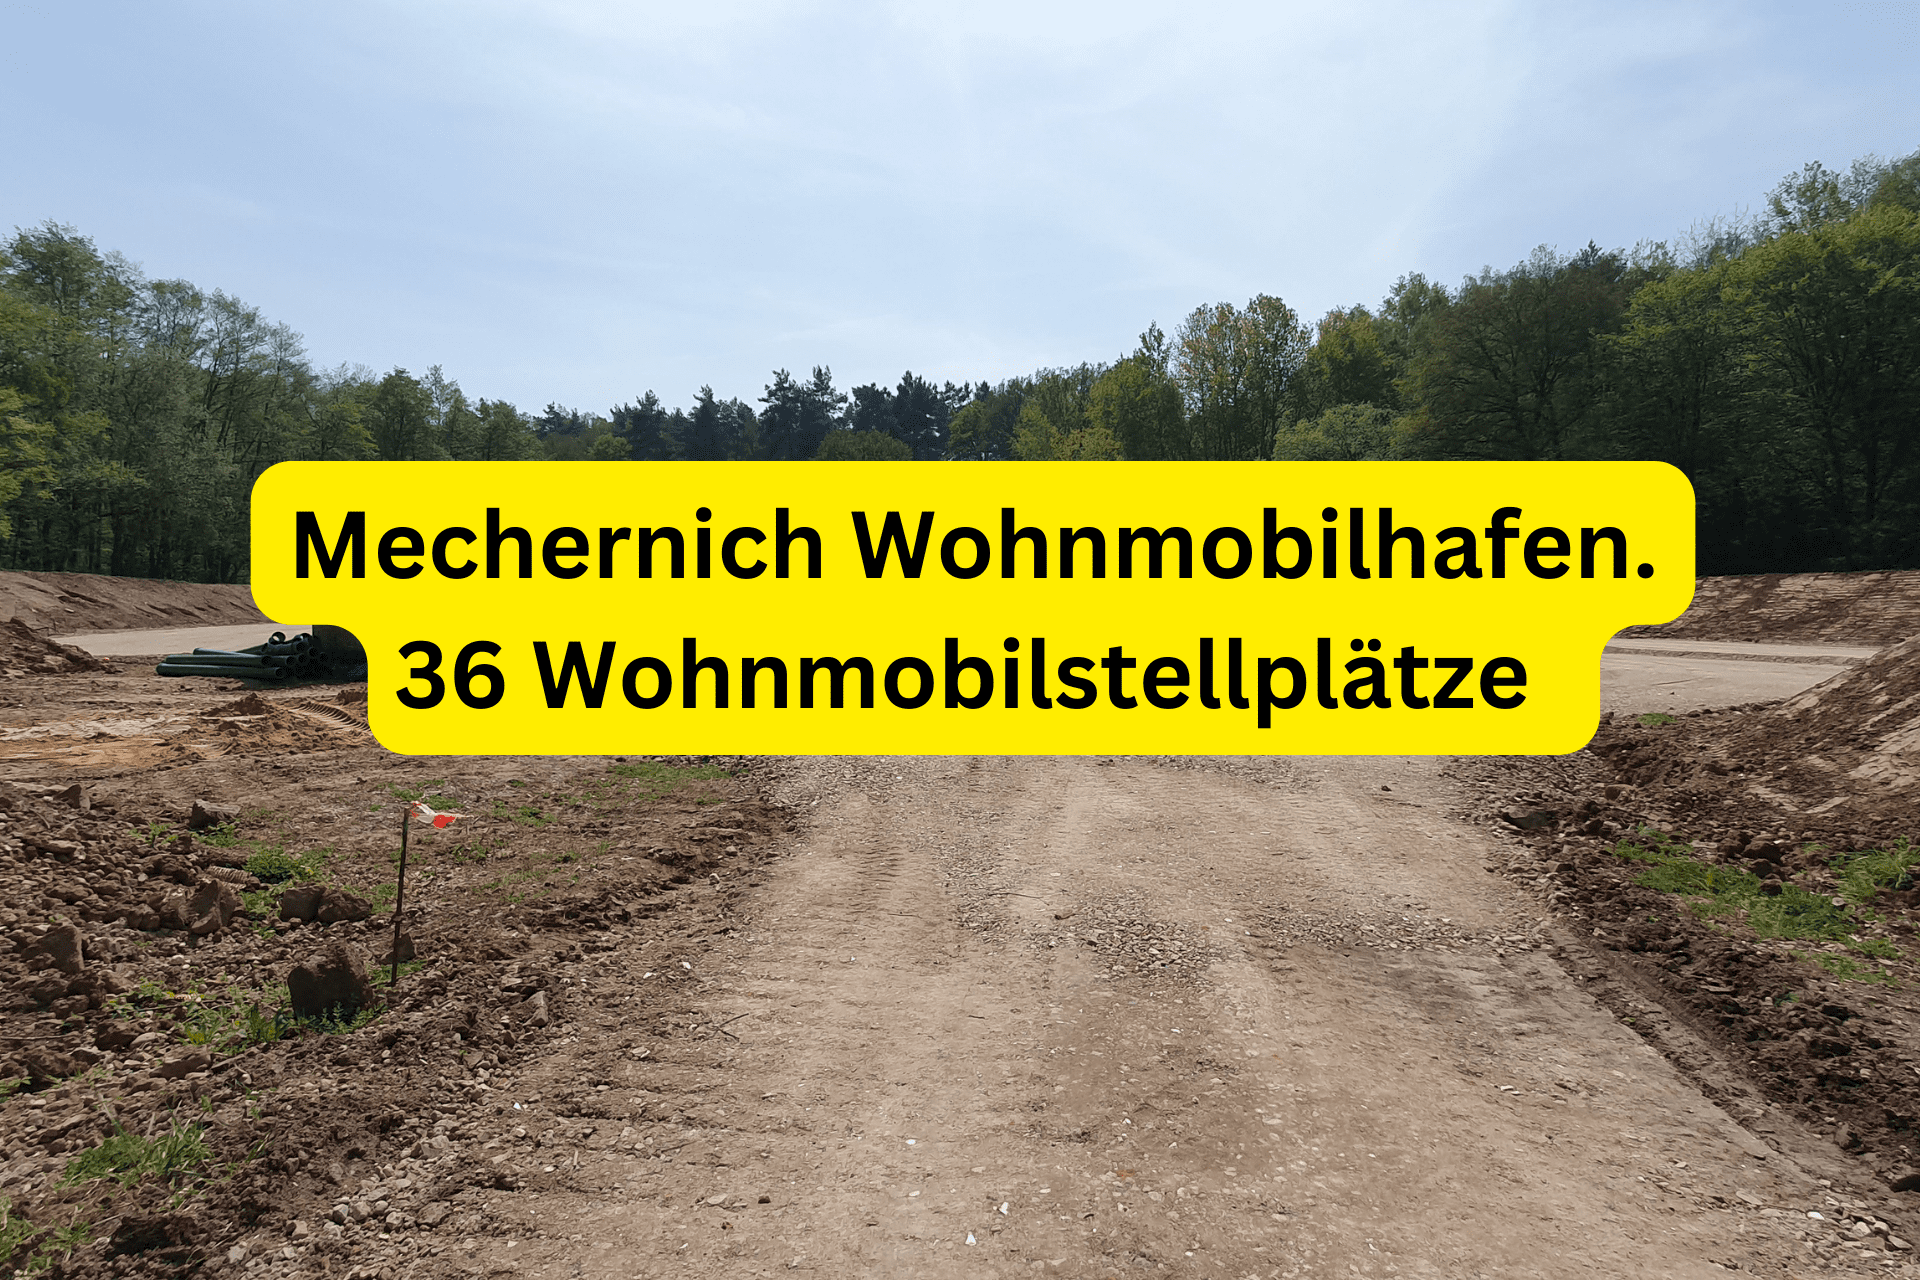 Mechernich Wohnmobilhafen. 36 Wohnmobilstellplätze